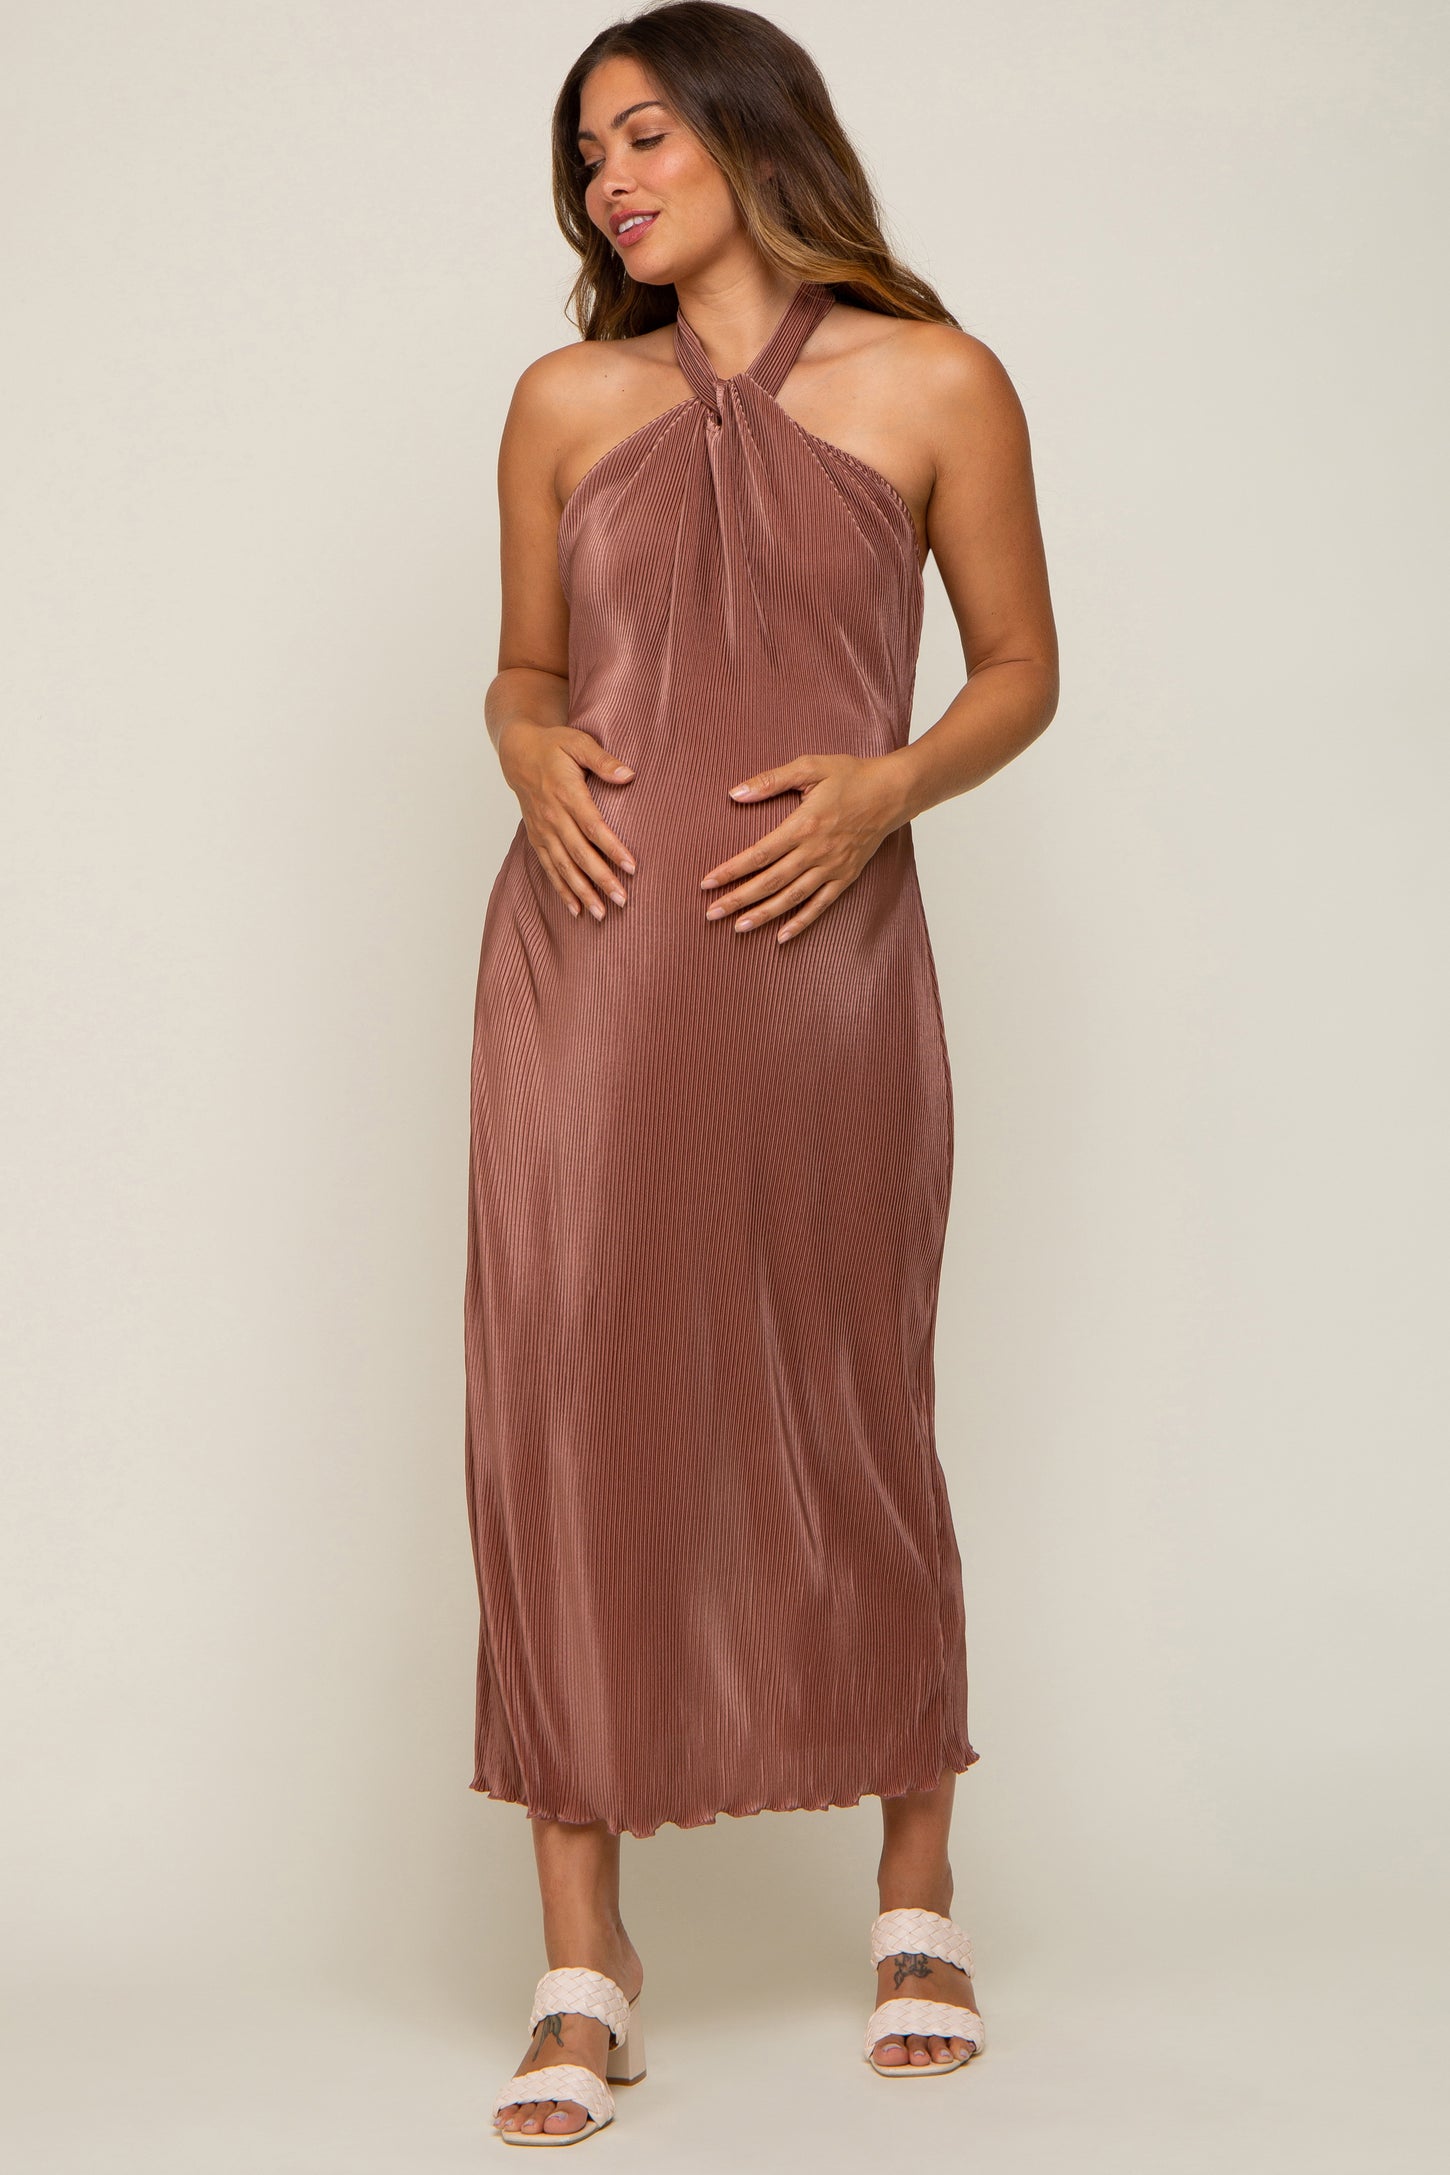 julia jordan Women's Knot-Front 3/4-Sleeve Dress - Macy's